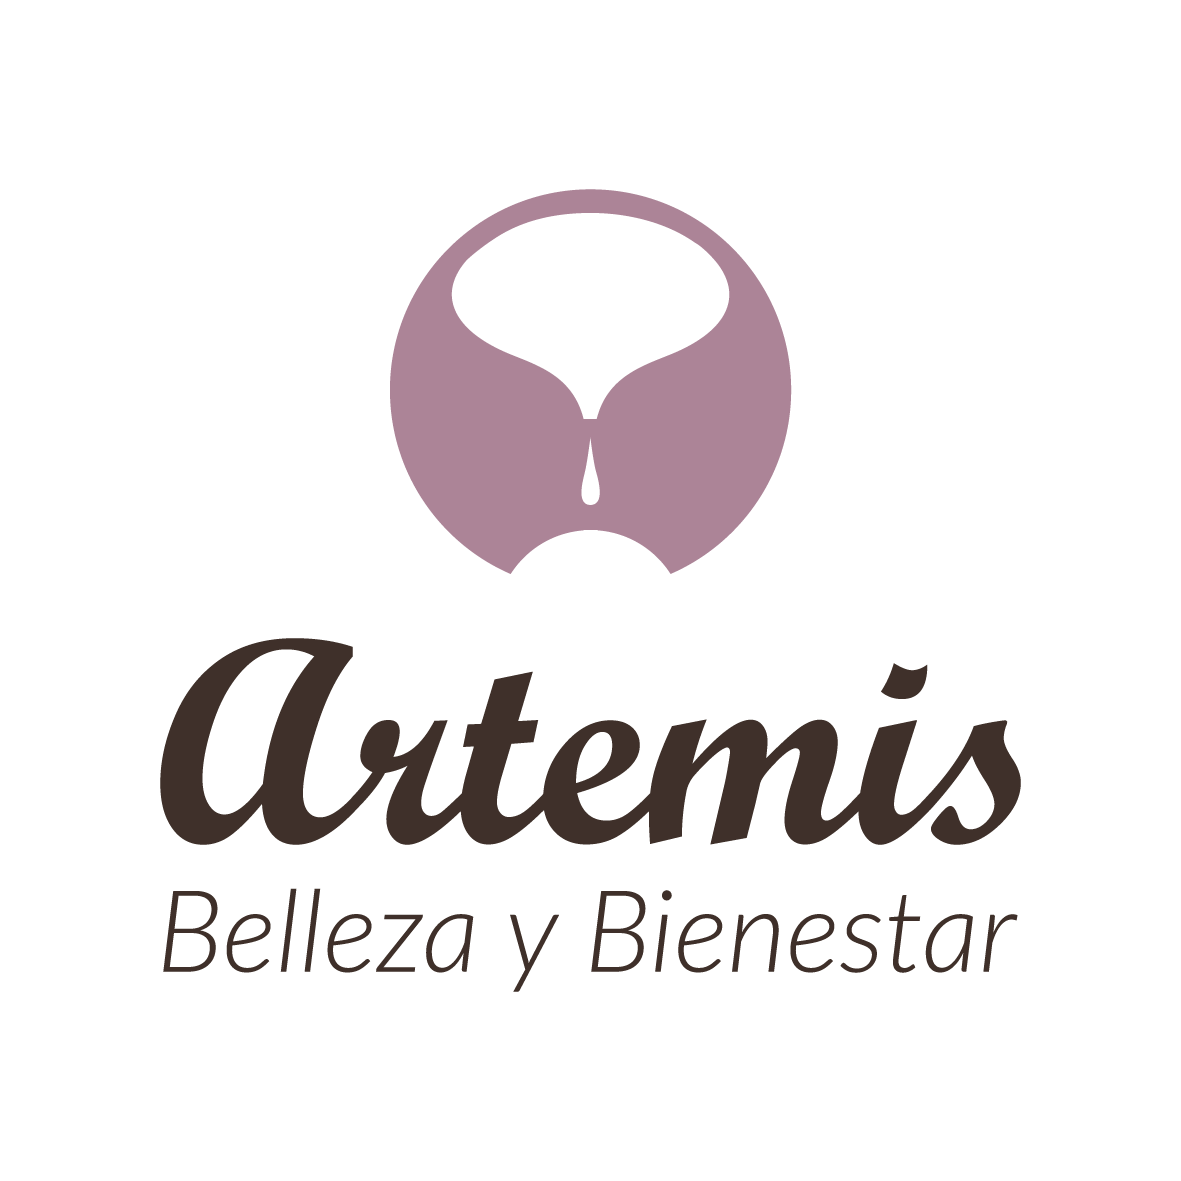 Artemis Belleza y Bienestar